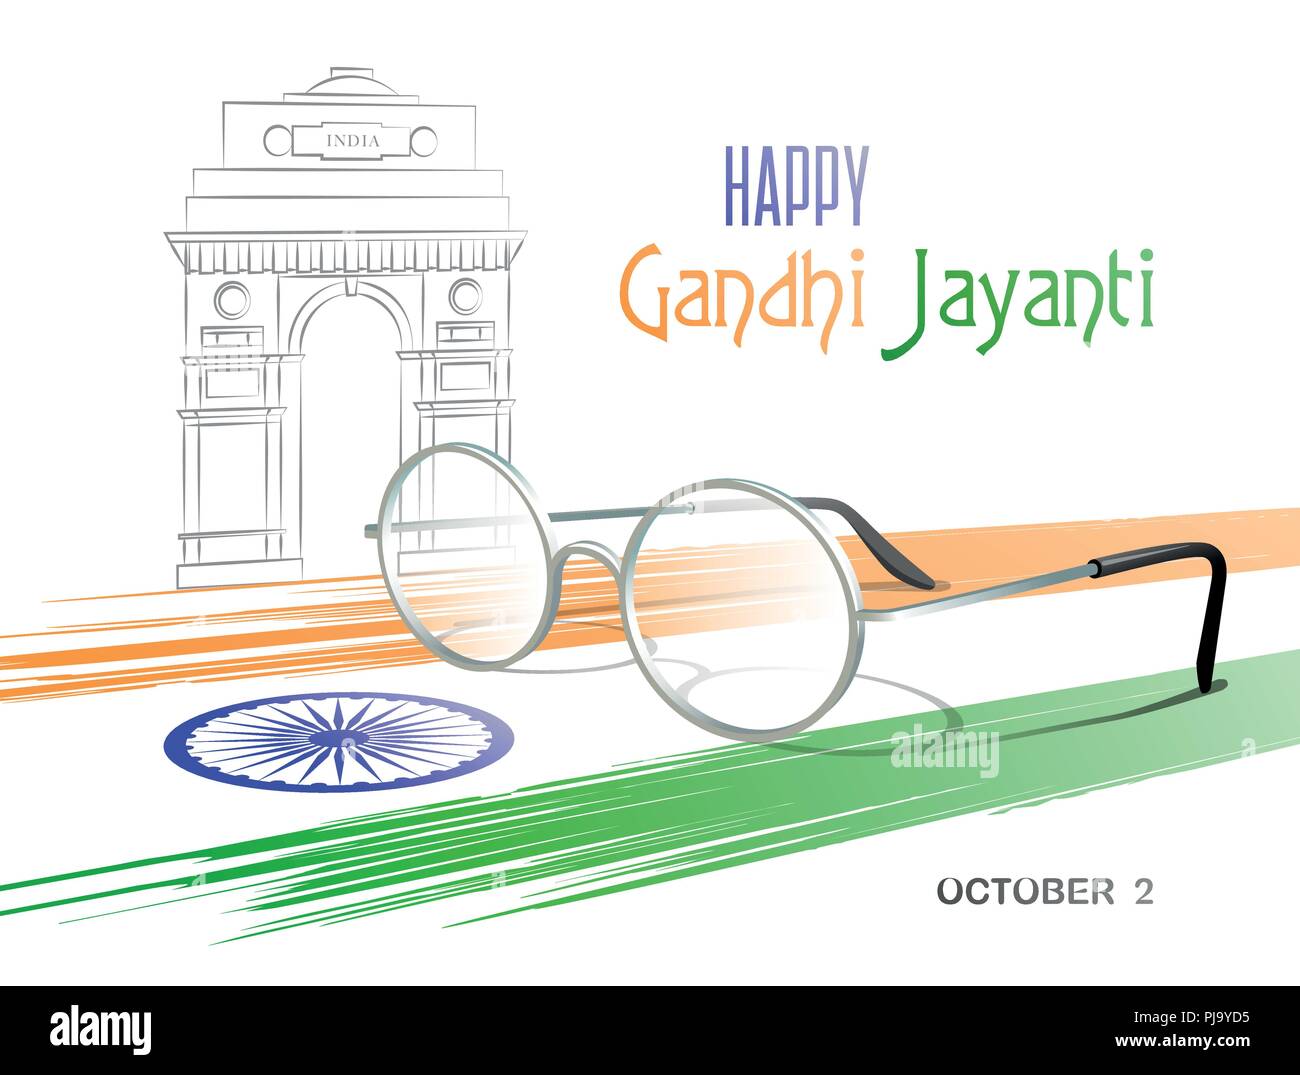 Le 2 octobre. Heureux Gandhi Jayanti. Couleurs abstraites du drapeau indien avec le chakra d'Ashoka, lunettes et un dessin de la porte de l'Inde. Vector illustration. Illustration de Vecteur